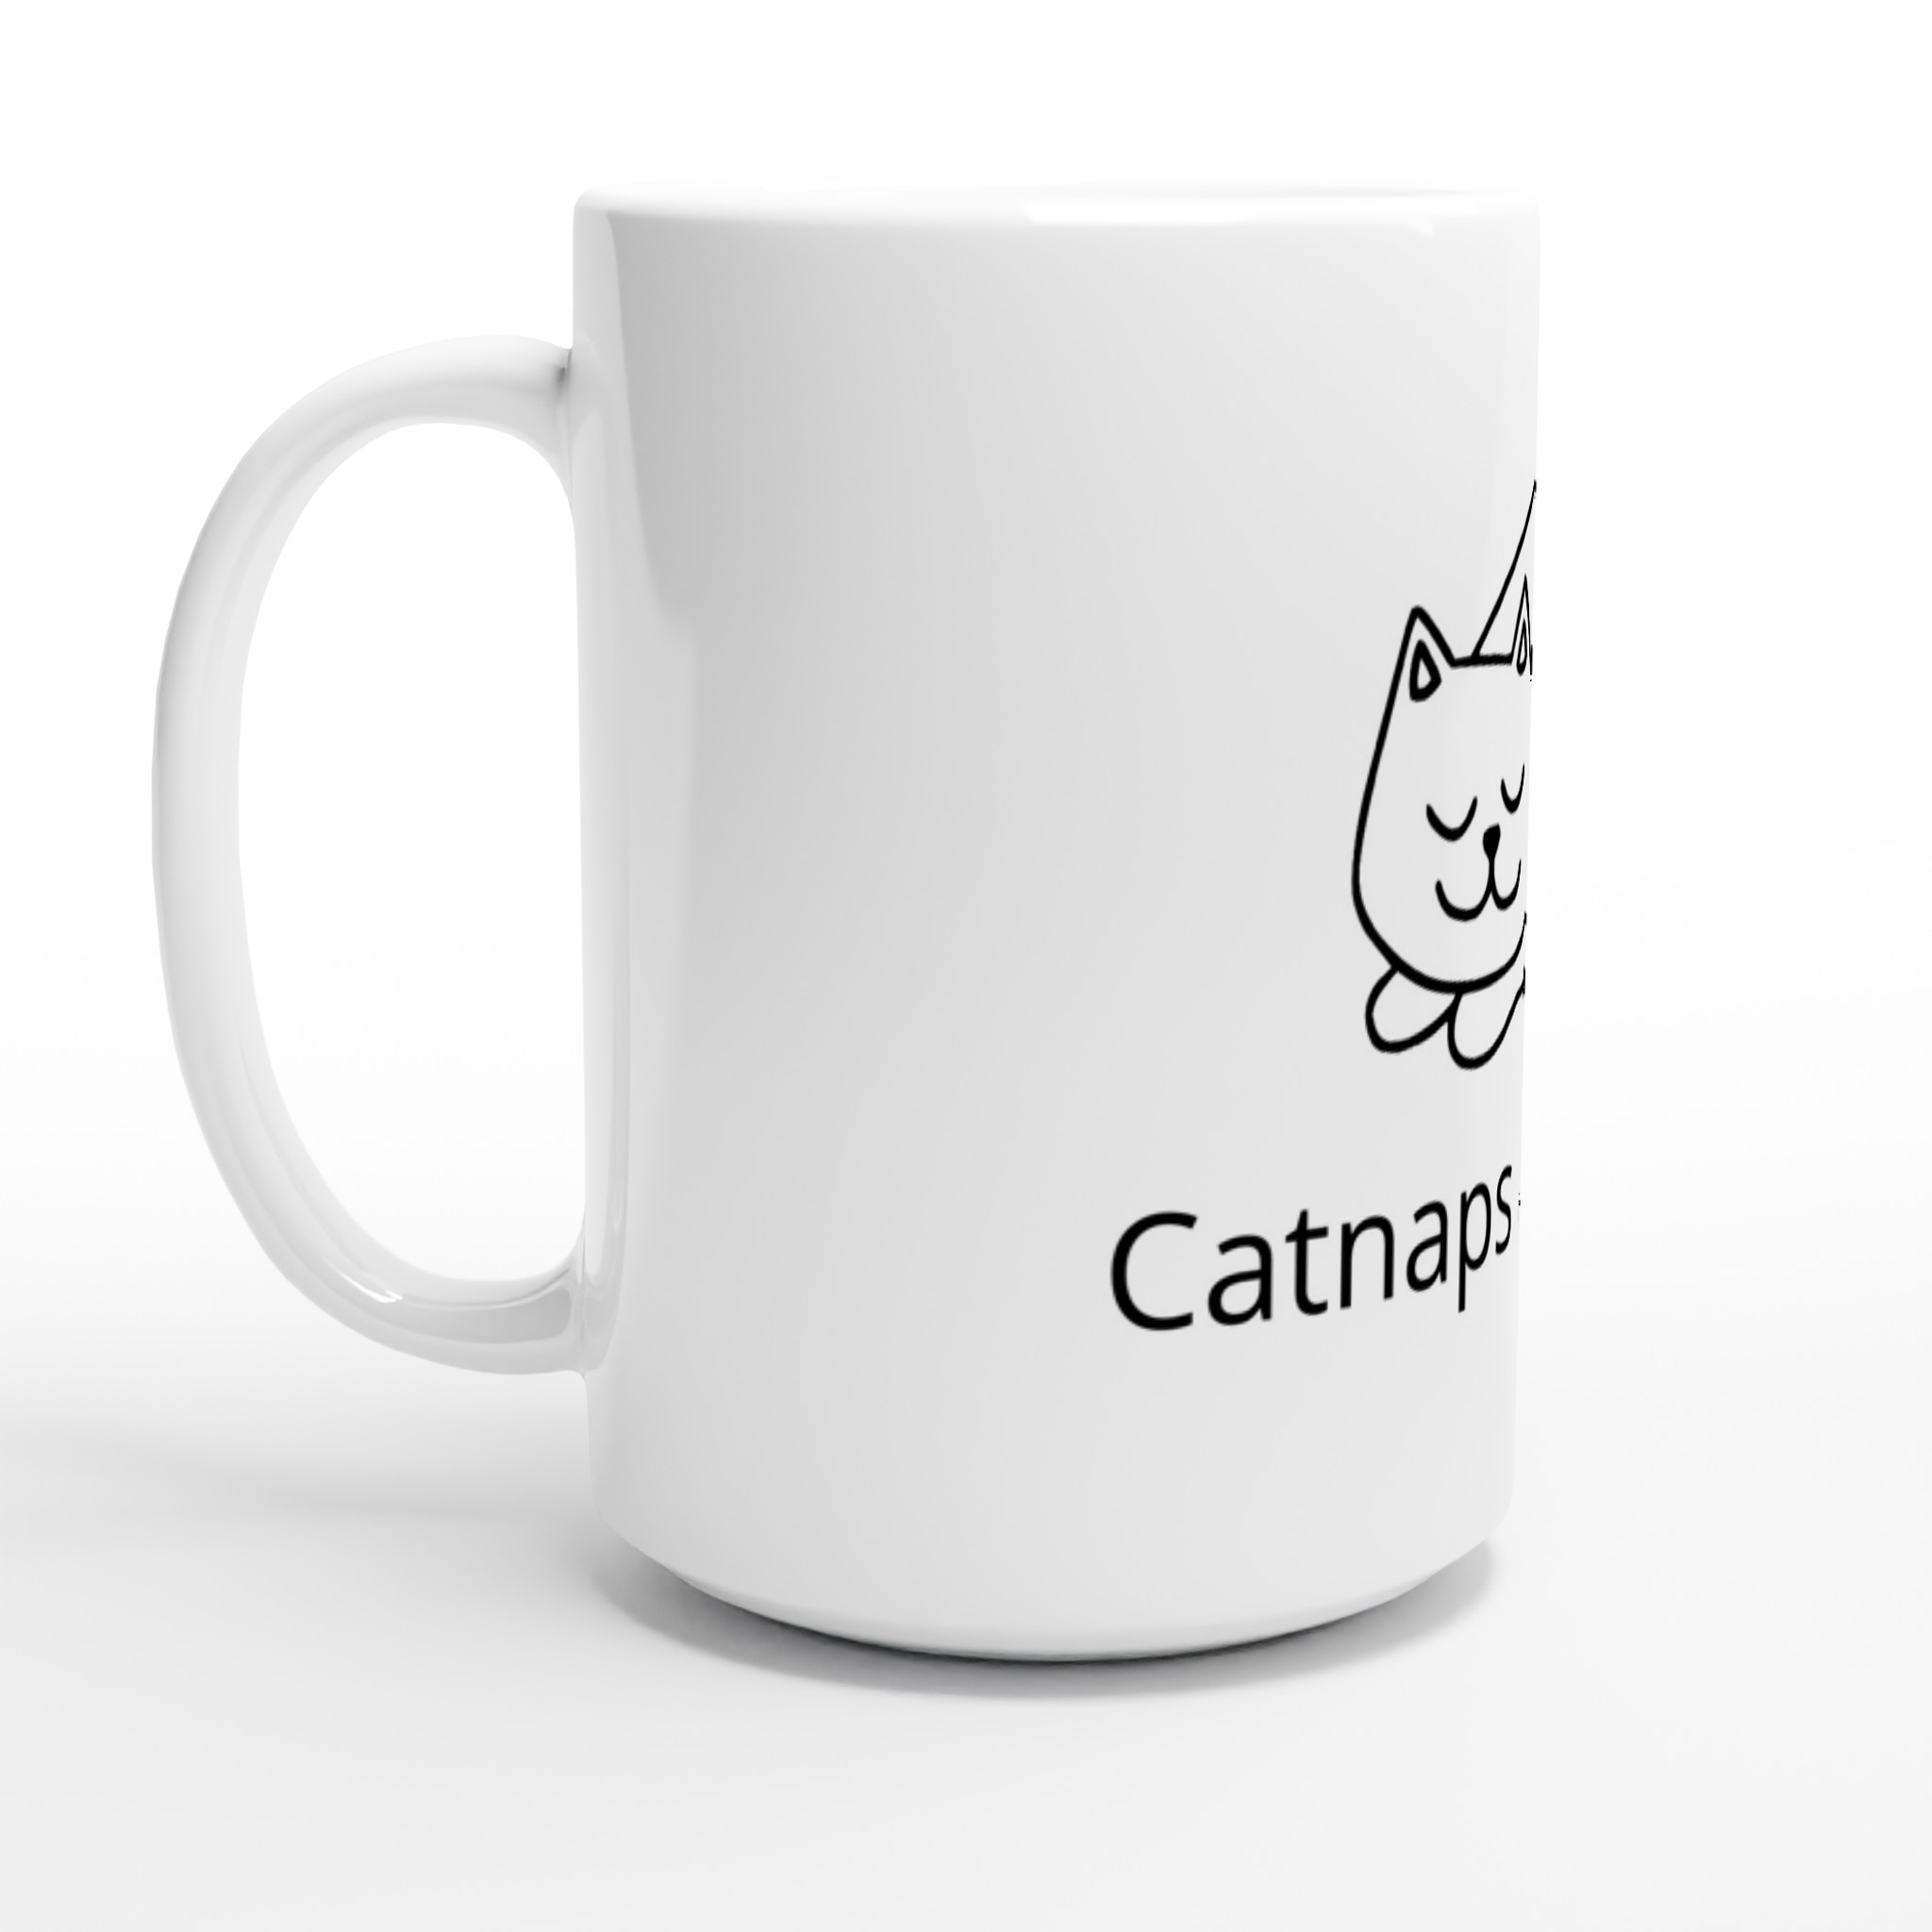 White 15oz Ceramic Mug - Catnaps and Coffee design